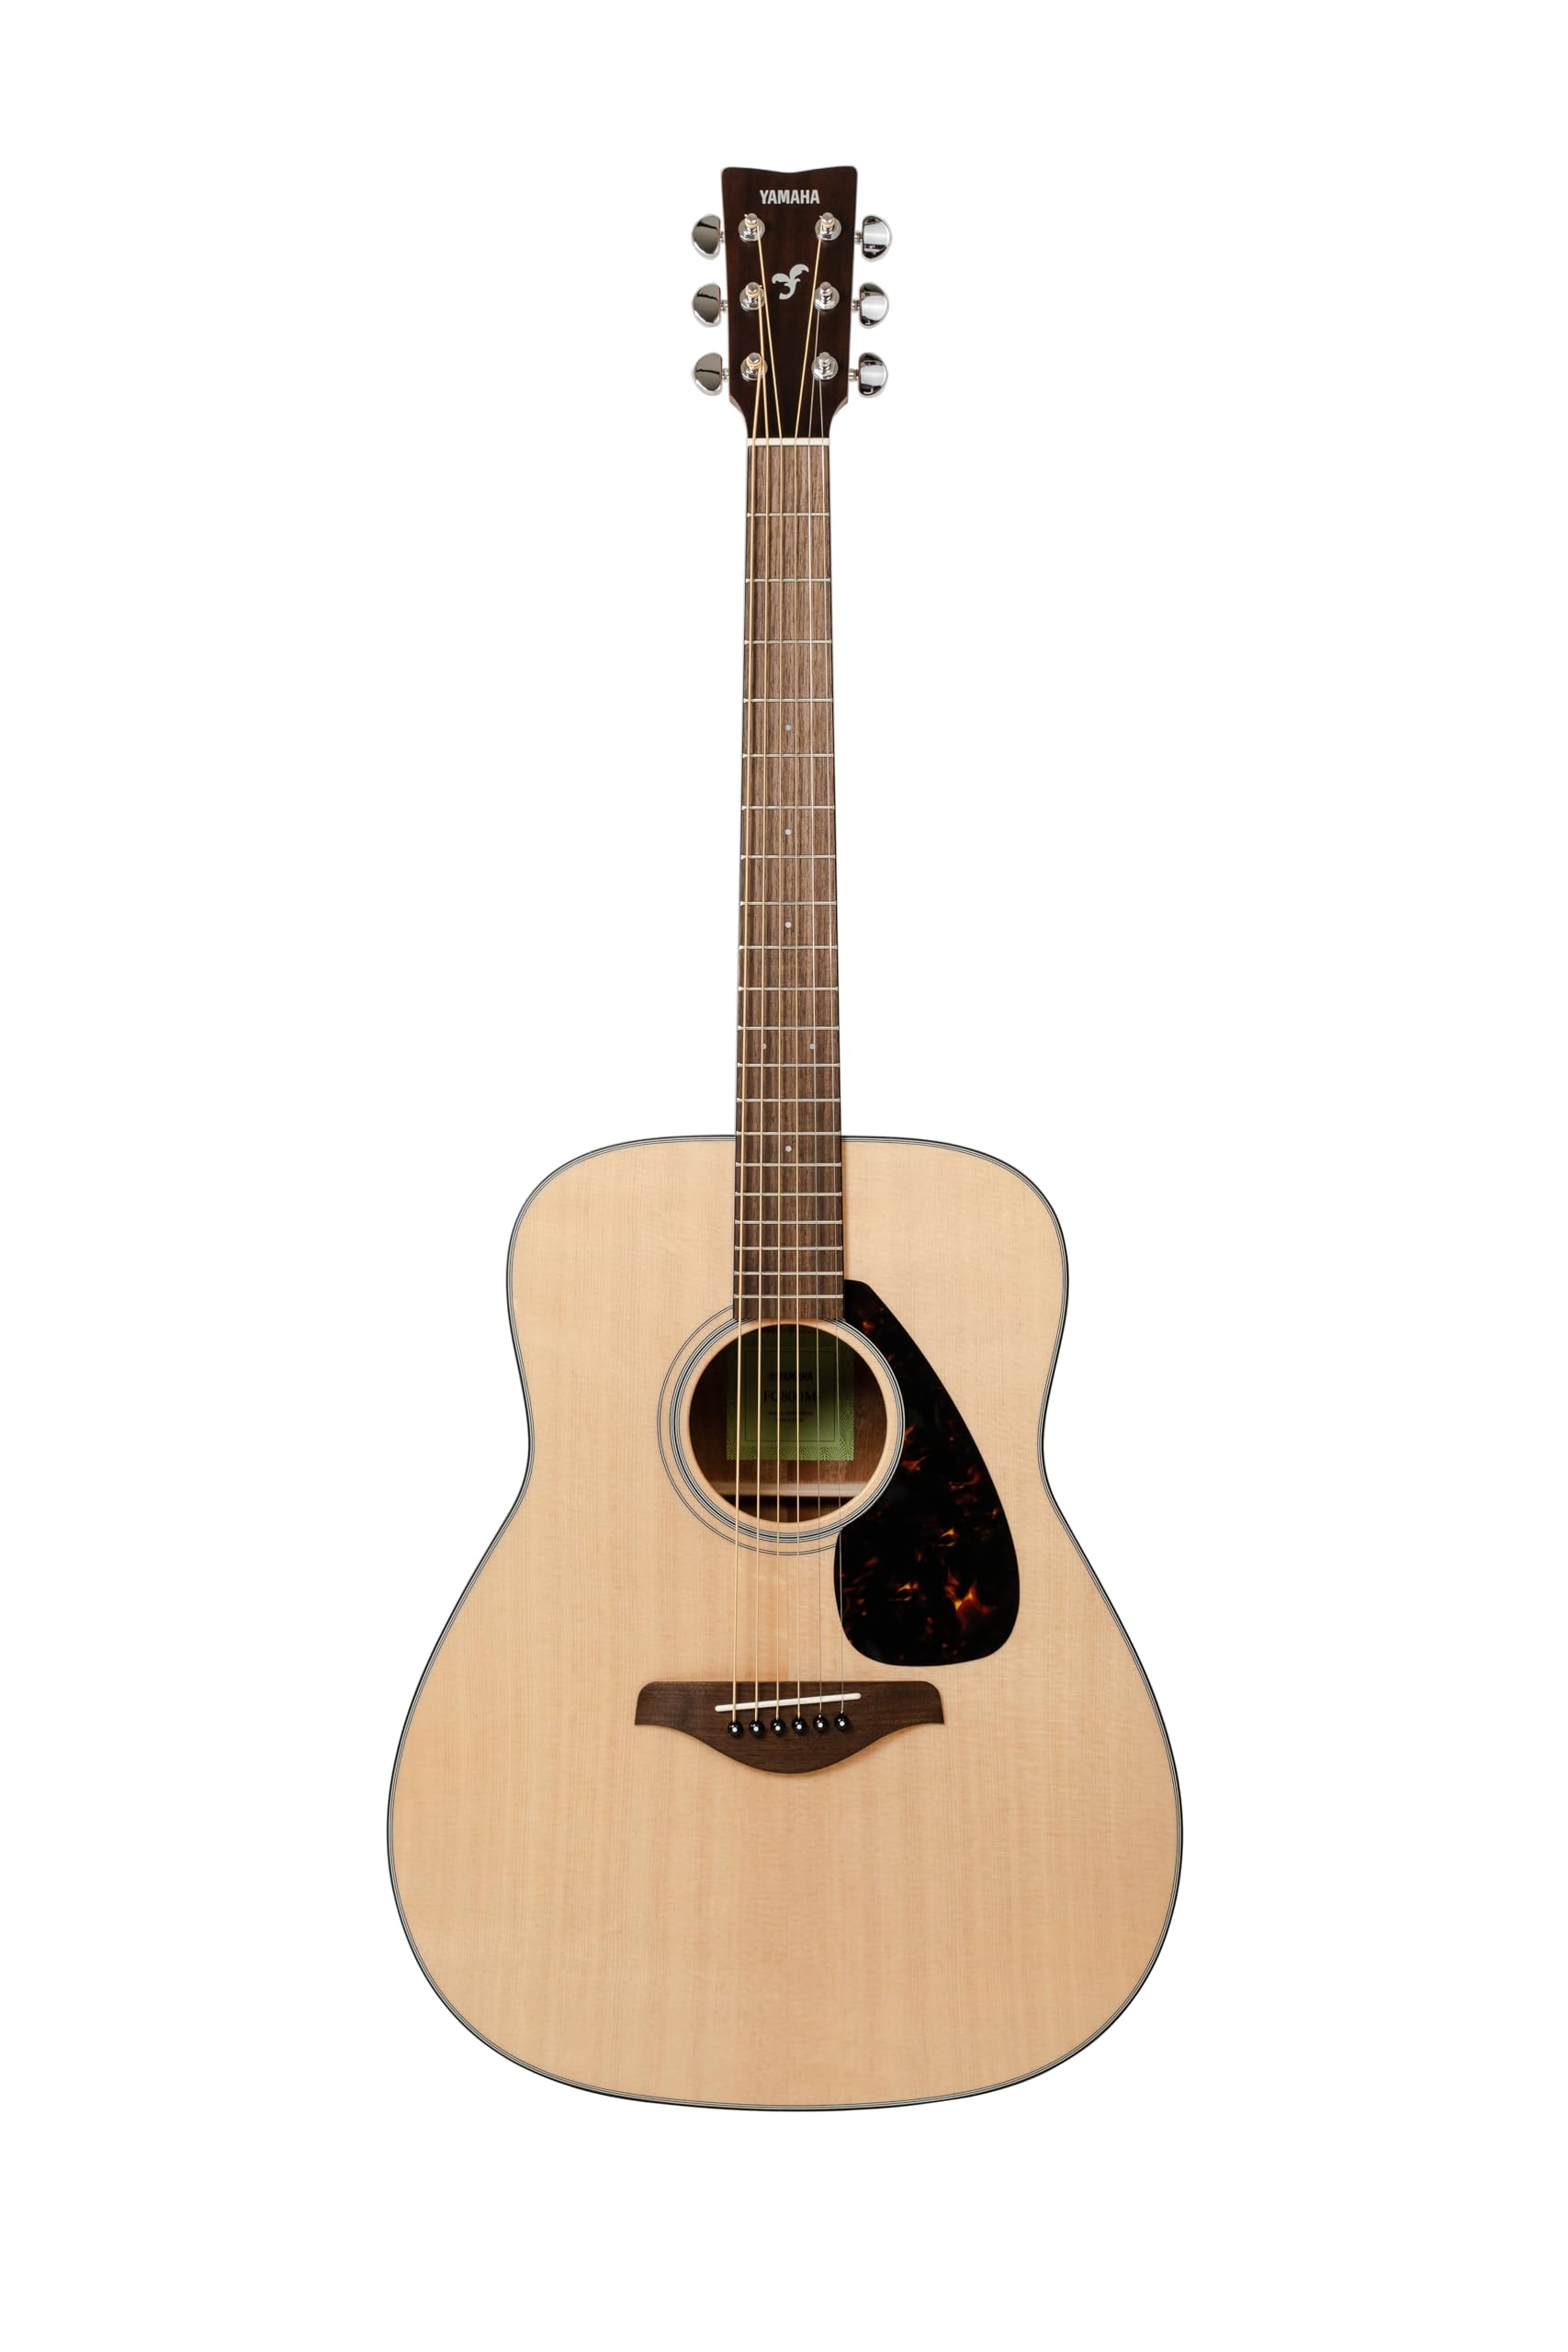 Yamaha FG800 Westerngitarre natur - Akustische Westerngitarre mit authentischem Klang - Anfängergitarre für Erwachsene & Jugendliche - 4/4 Gitarre aus Holz